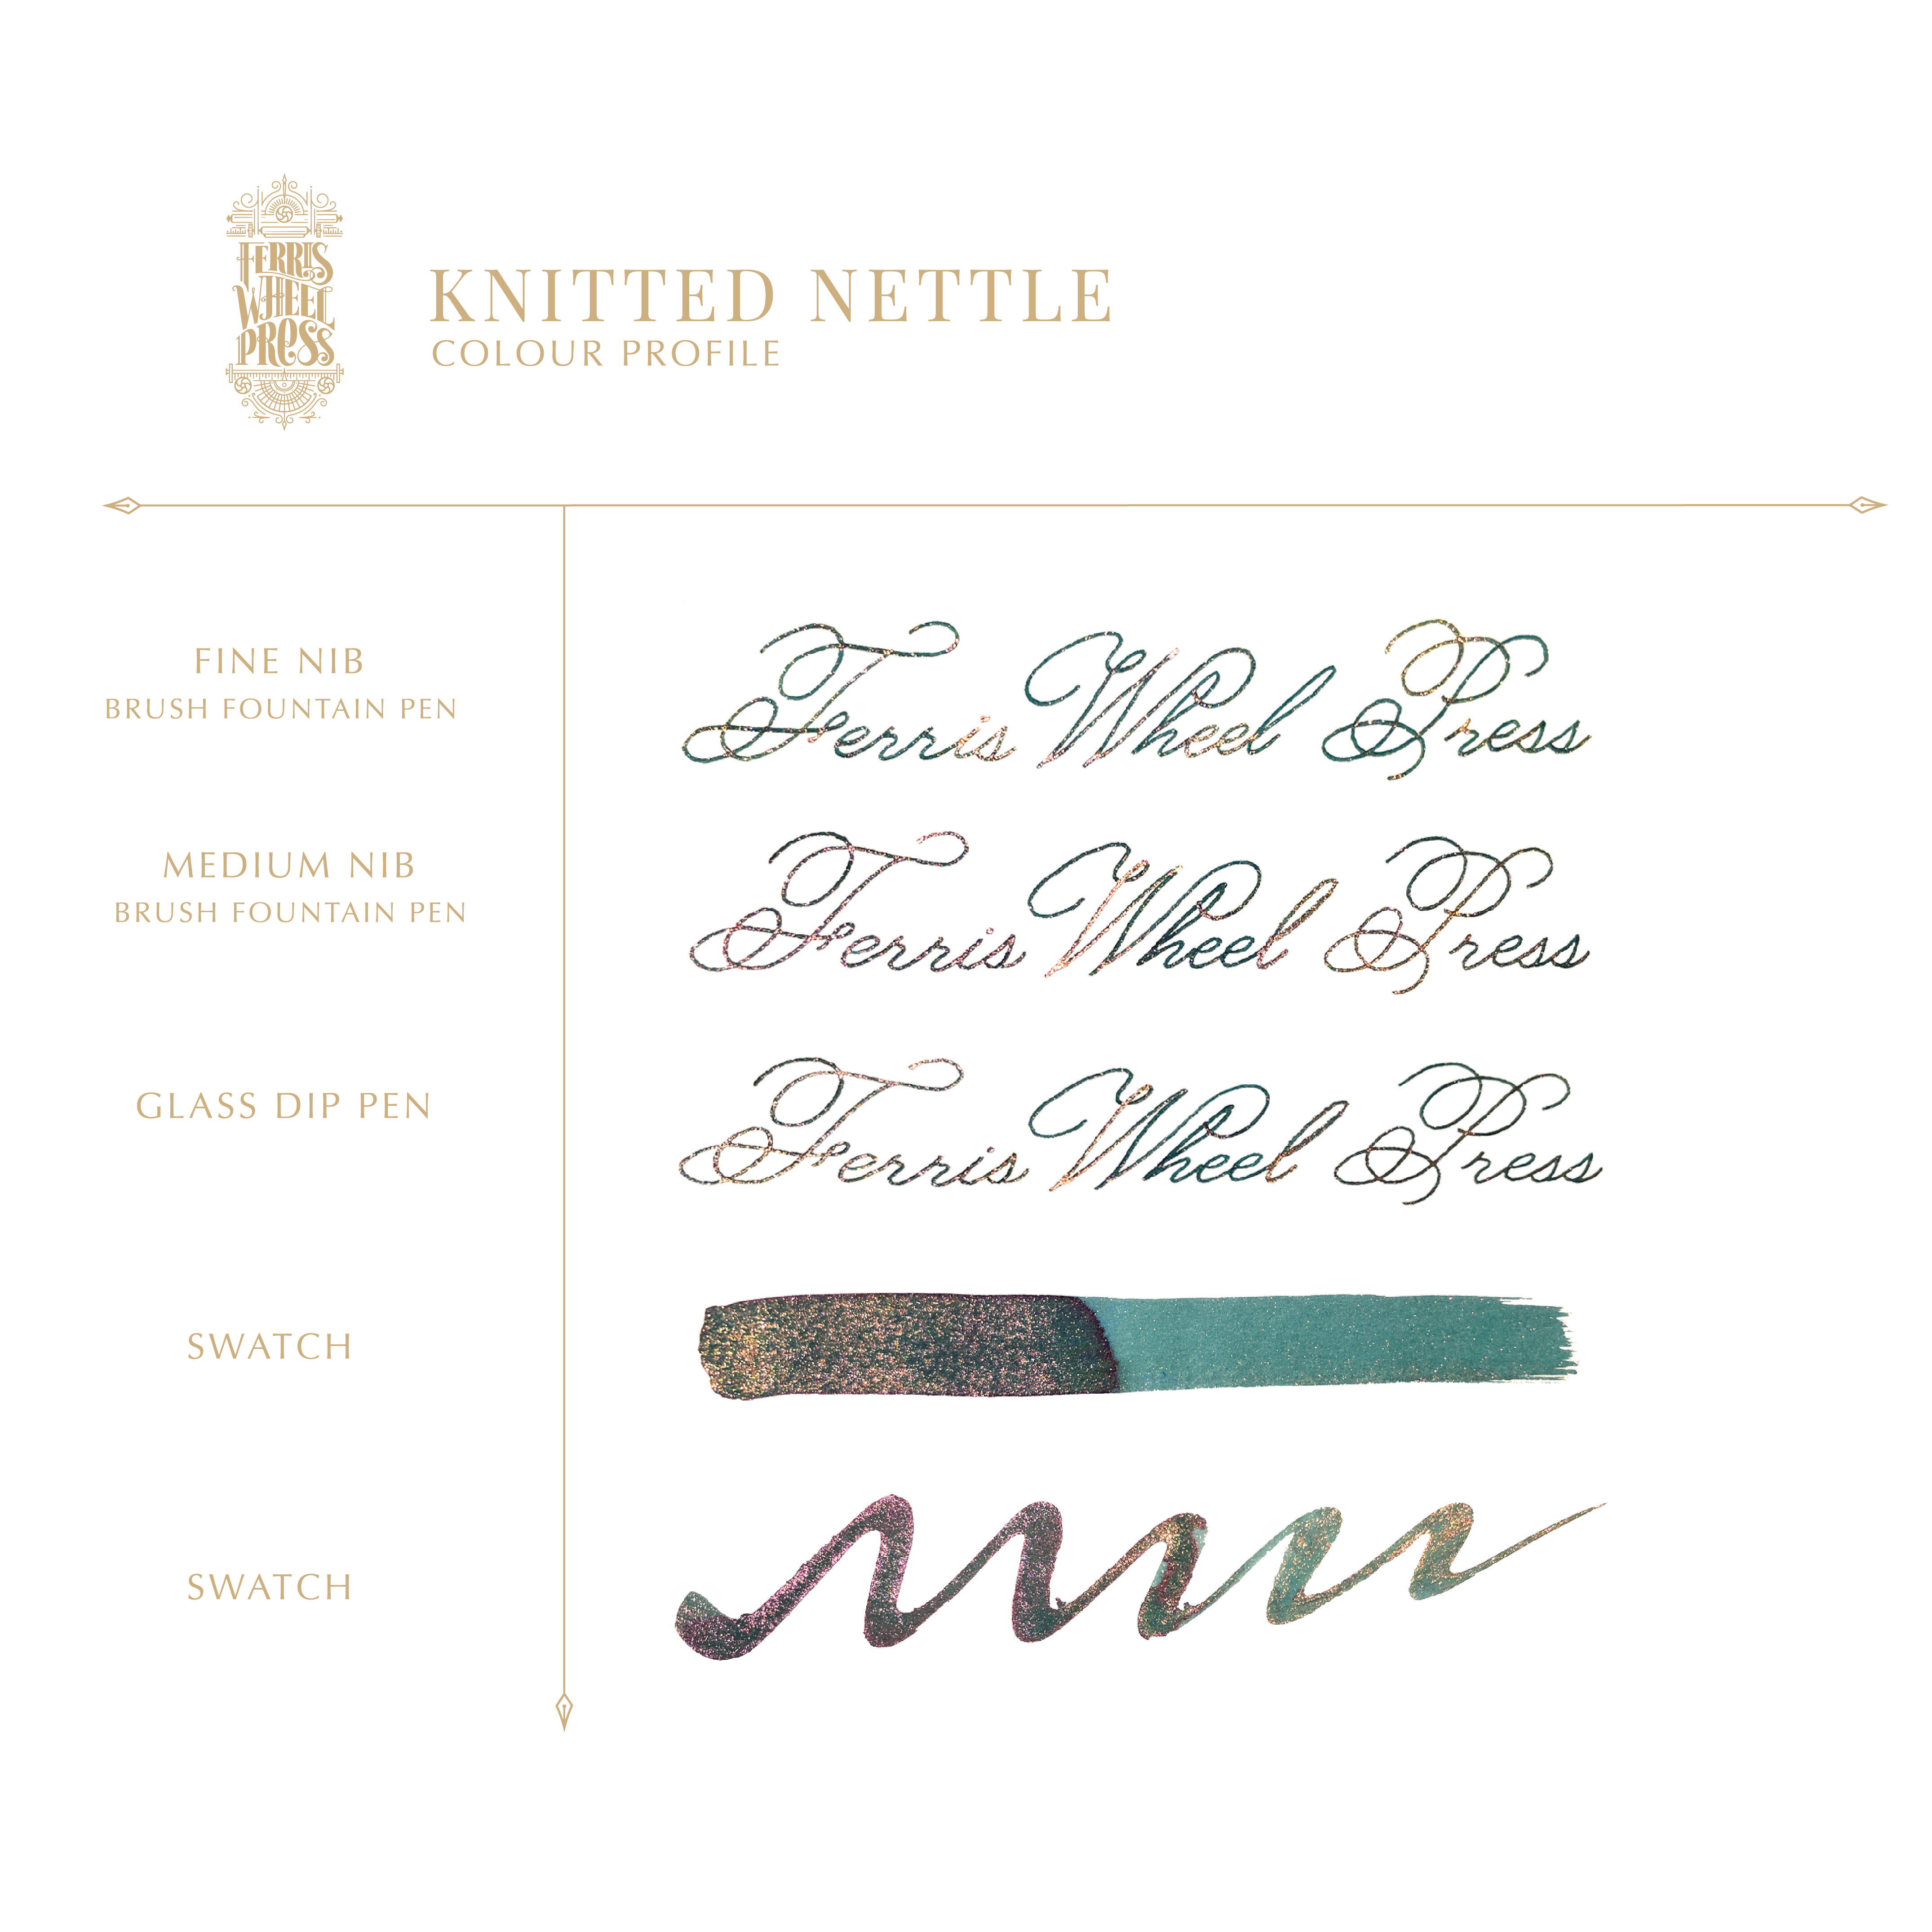 FerriTales | The Wild Swans - Knitted Nettle